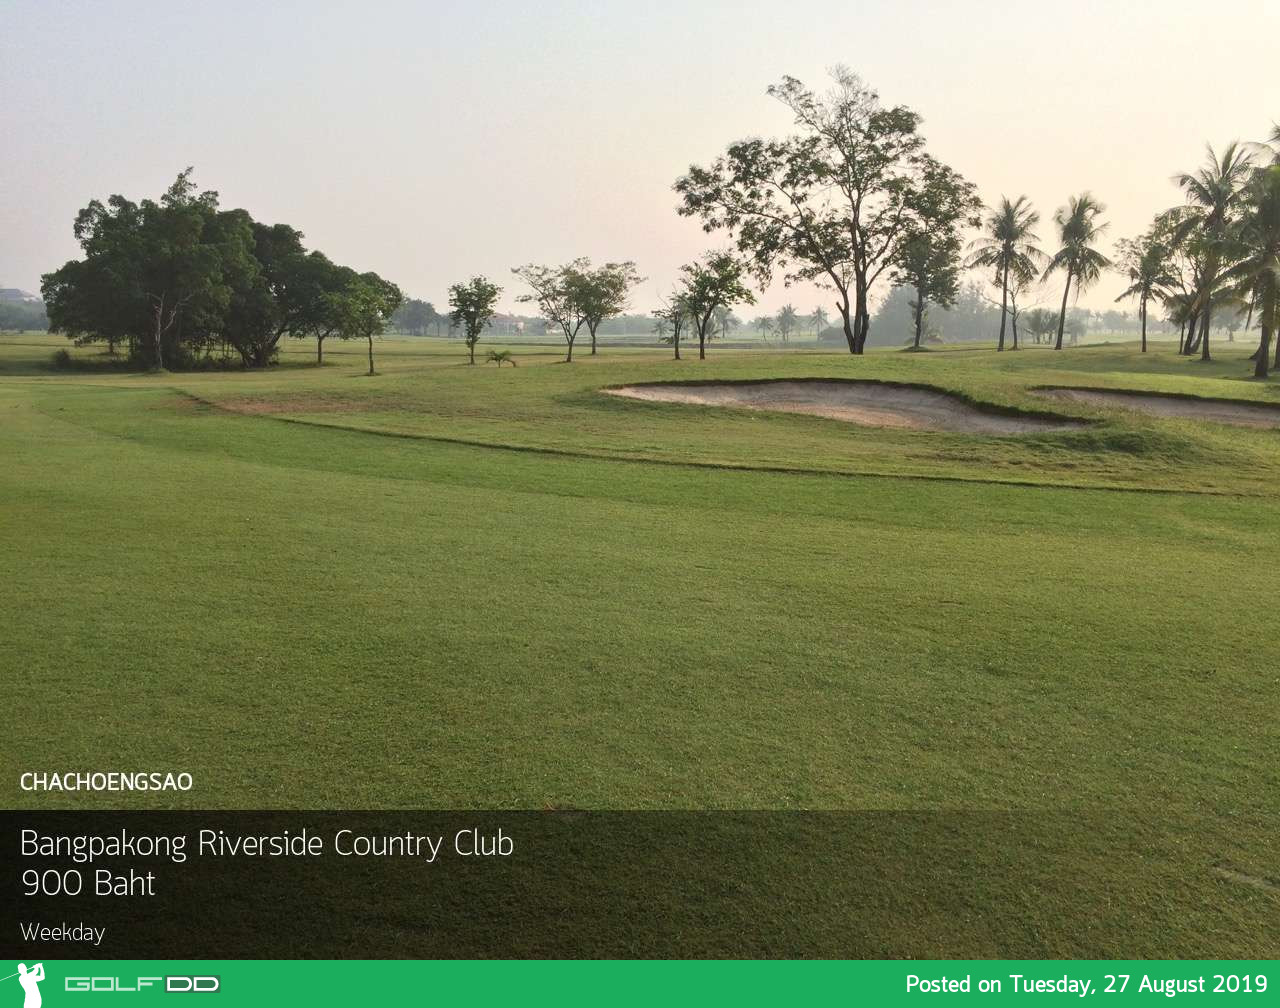 ออกรอบริมแม่น้ำ บรรยากาศสดชื่นที่ Bangpakong Riverside Country Club ฉะเชิงเทรา พร้อม Booking Teetime กับ golfdd จ่ายเงินที่สนามได้เลย 